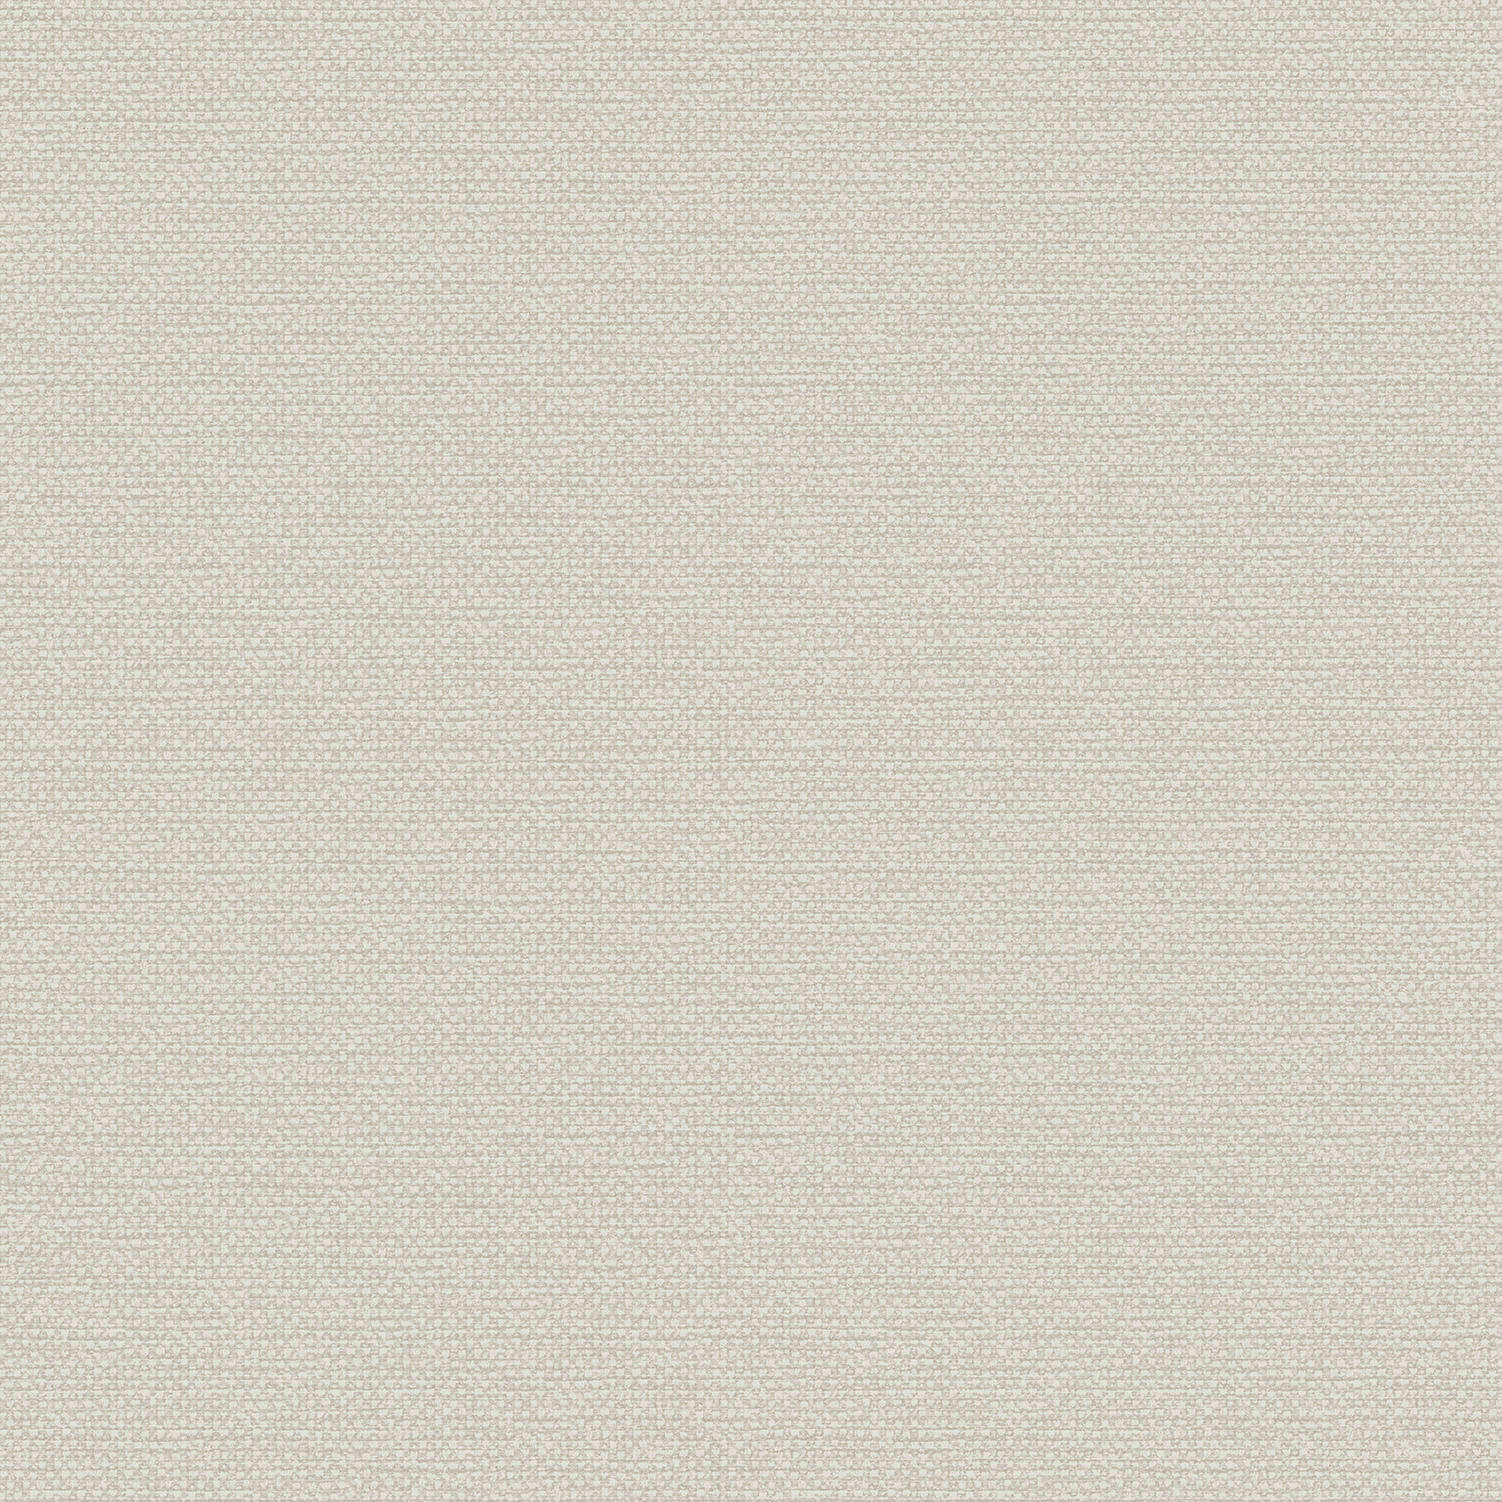 Vinyltapete Uni beige B/L: ca. 53x1005 cm Vinyltapete_A74607 - beige (53,00/1005,00cm)